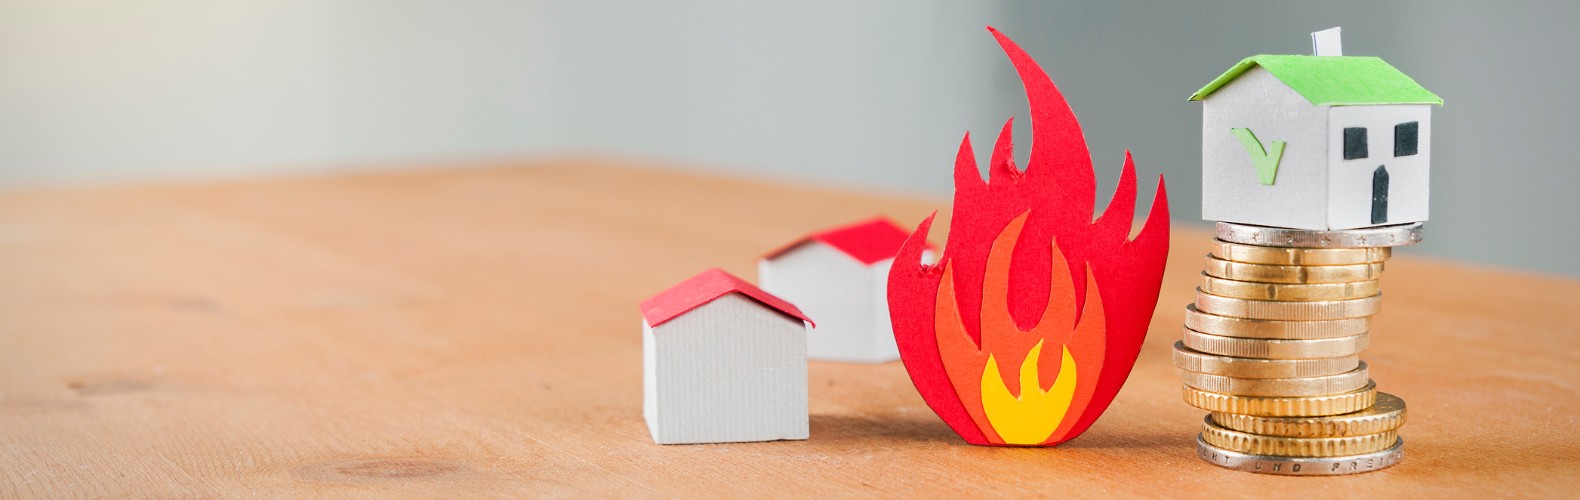 home insurance vs fire insurance